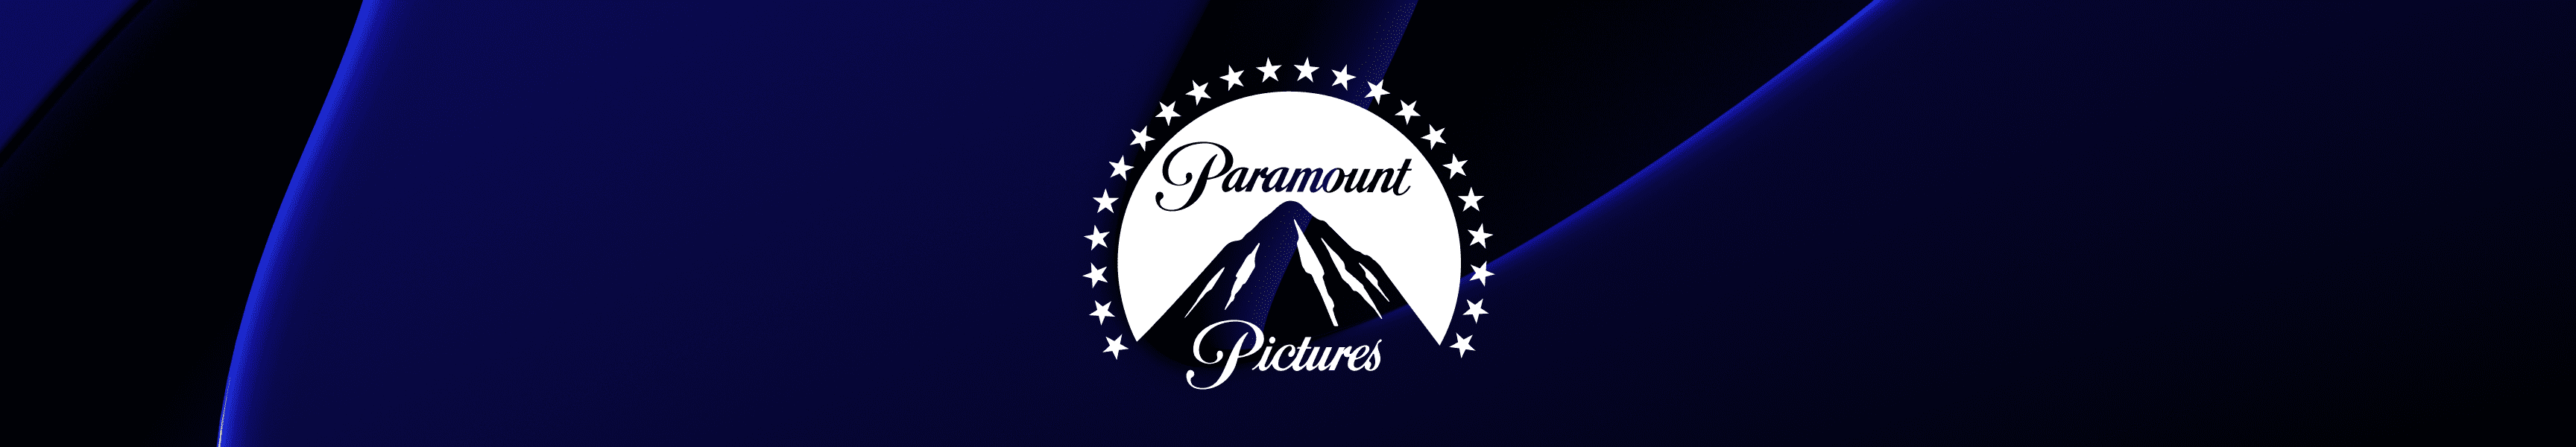 Paramount Pictures Accesorios de bar